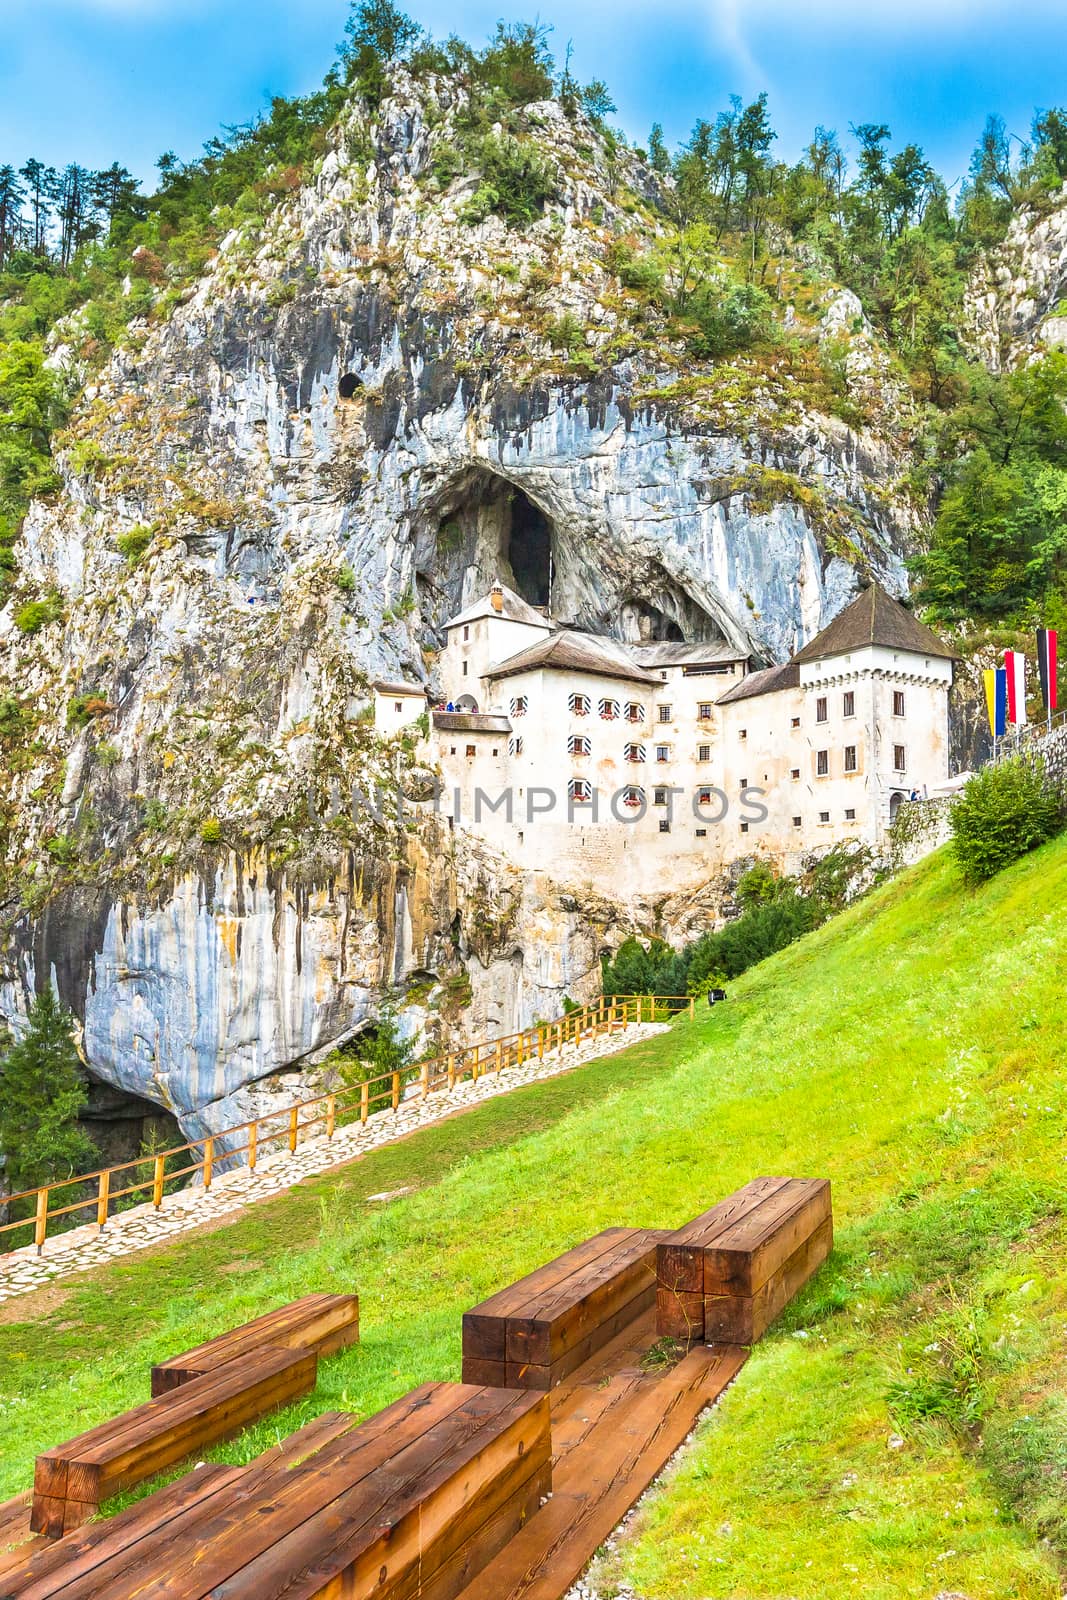 Predjama Castle in Slovenia. Predjama, approximately 9 kilometres from Postojna Cave.